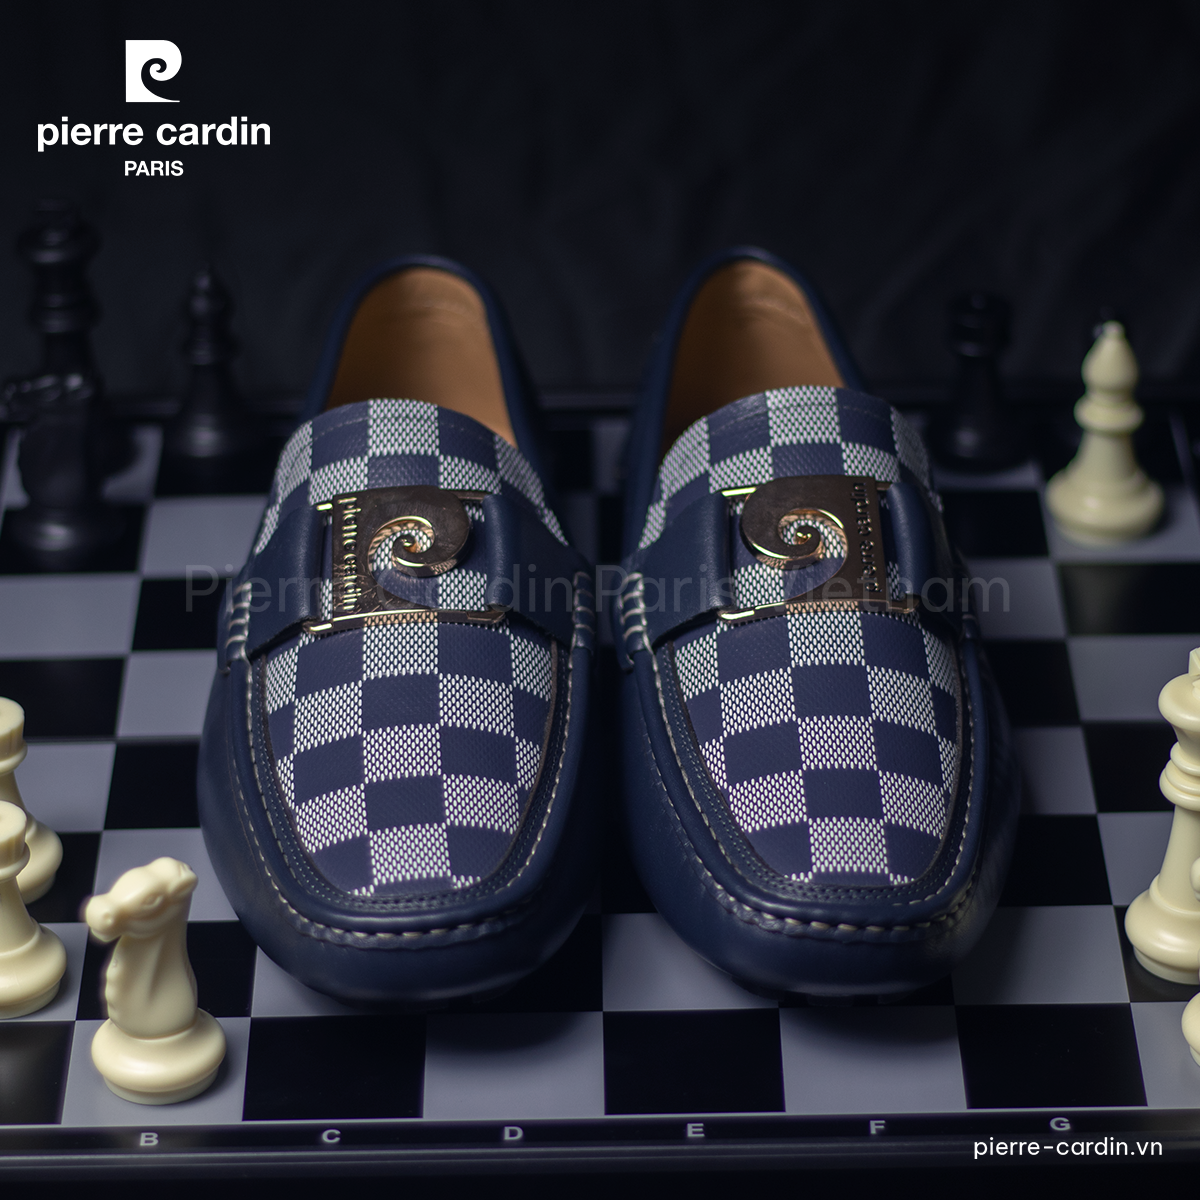 Hình 2 - Da Nappa không chỉ mang lại độ bền và mềm mại mà còn tạo nên vẻ đẹp sang trọng và lịch lãm cho đôi giày.